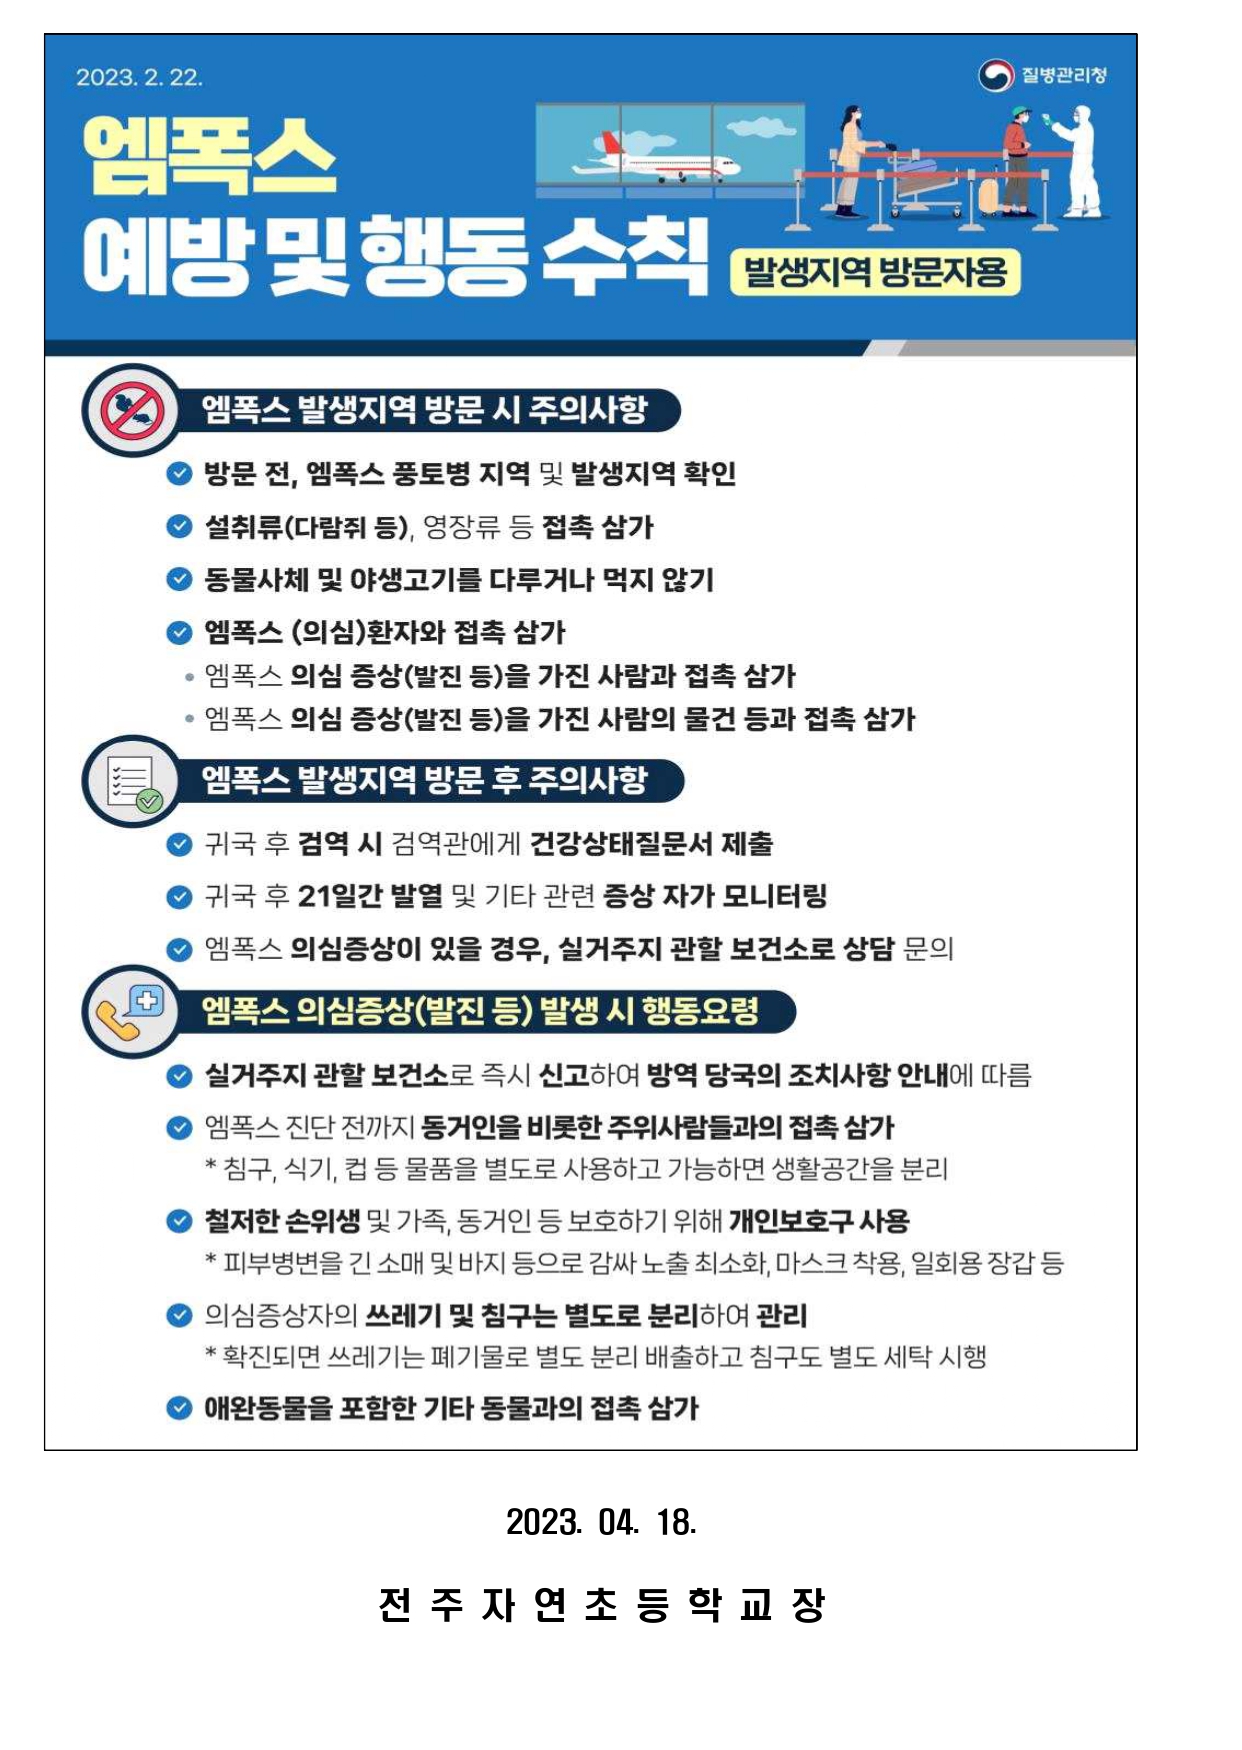 감염병(엠폭스) 예방수칙 안내문_page-0002